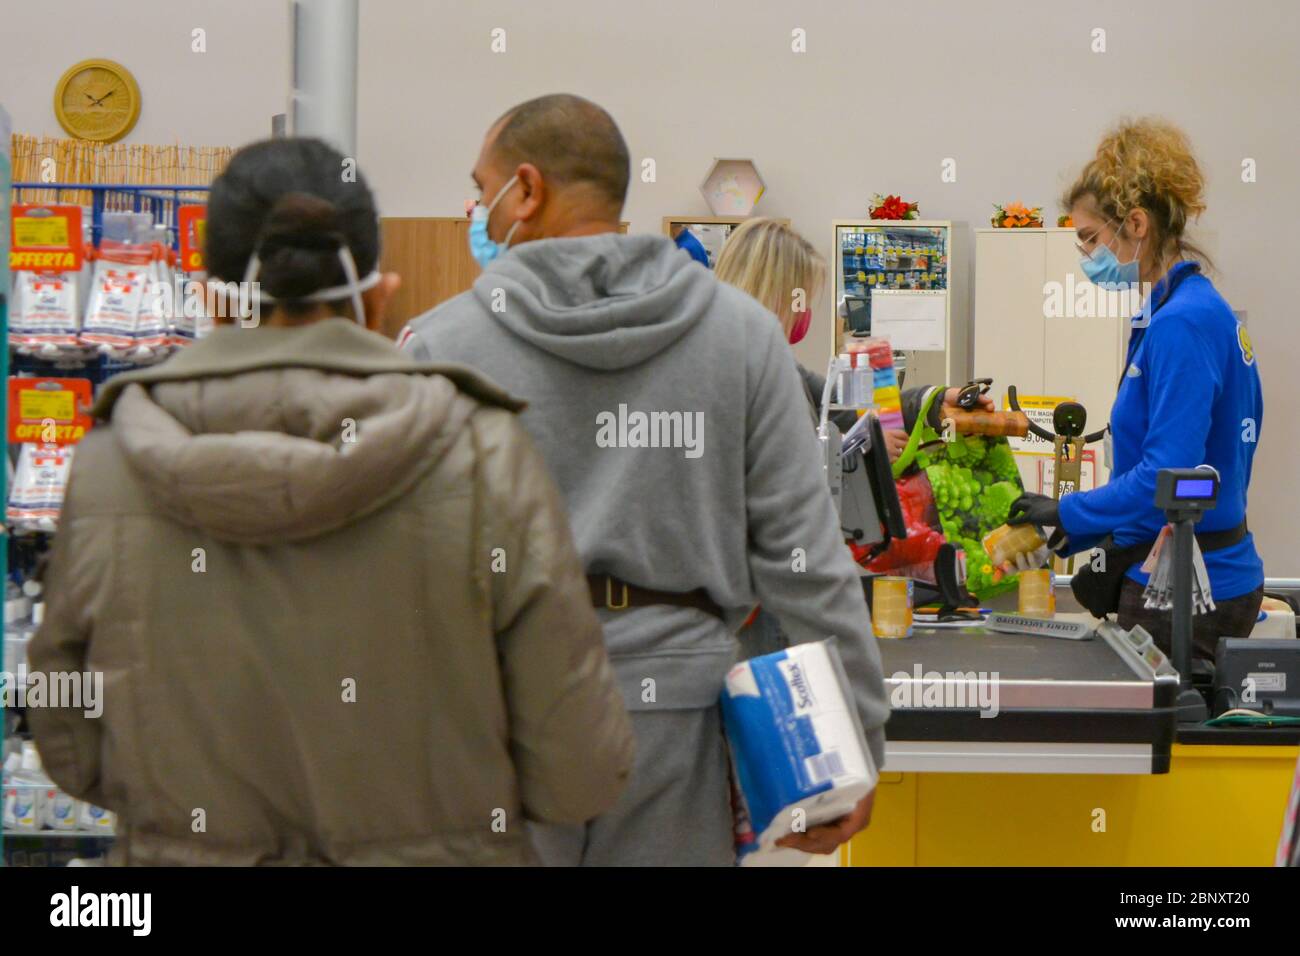 Toscane, Italie 04/14/20 UN caissier dans une épicerie portant un masque et des gants de protection contre les coronavirus, scannant du papier toilette et d'autres produits. Shoppin Banque D'Images